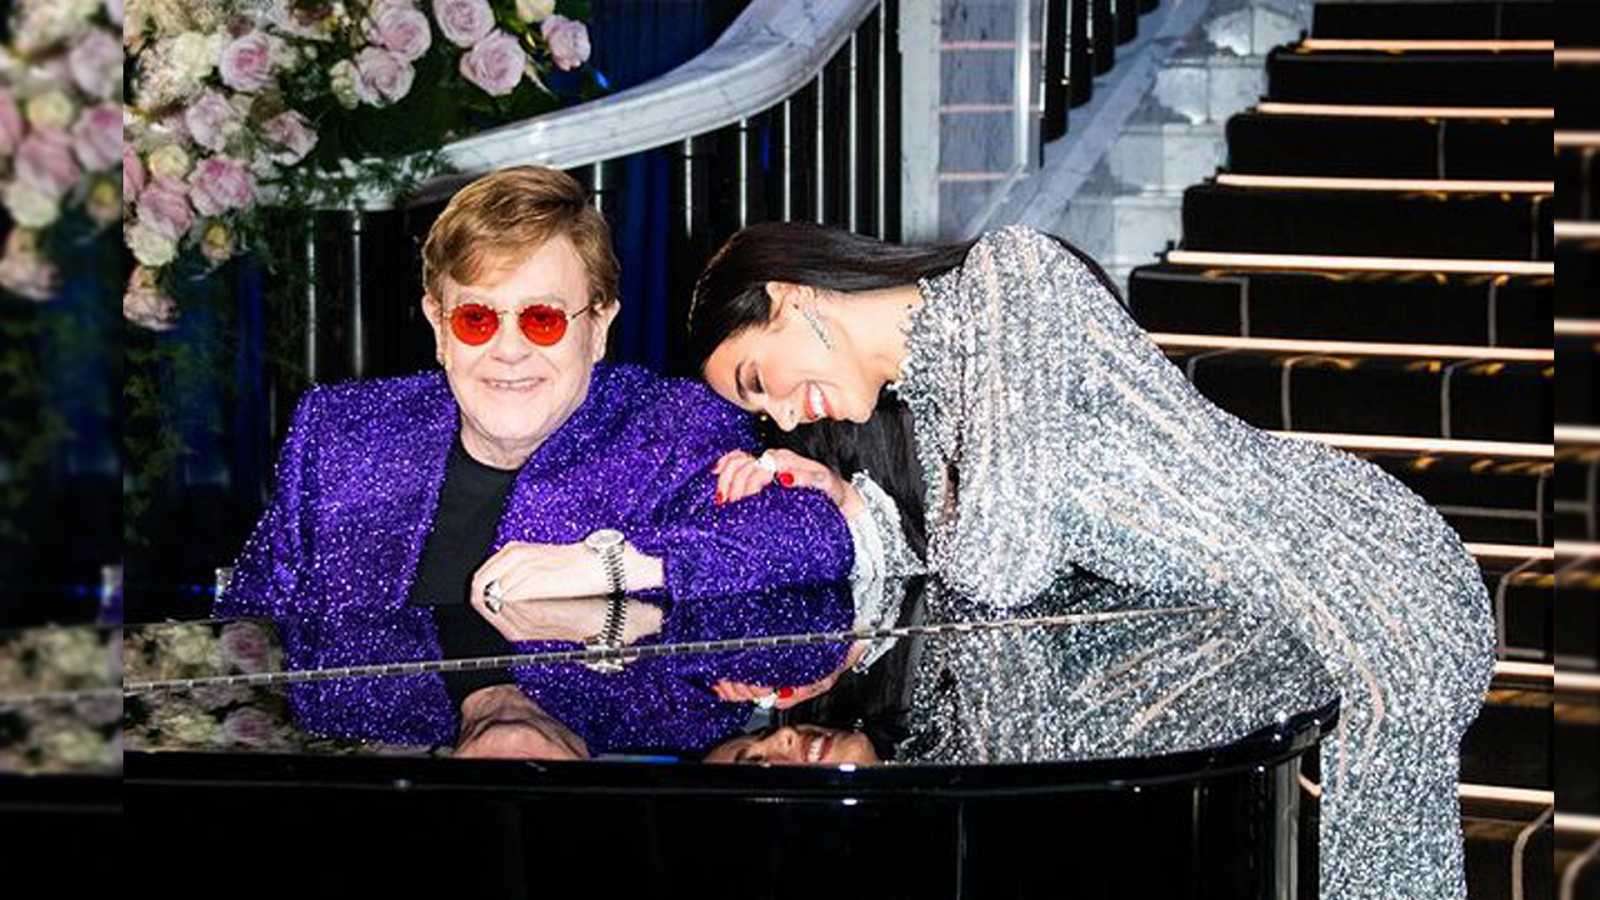 Pas pushimeve relaksuese, Dua Lipa bashkon “forcat” me legjendarin Elton John